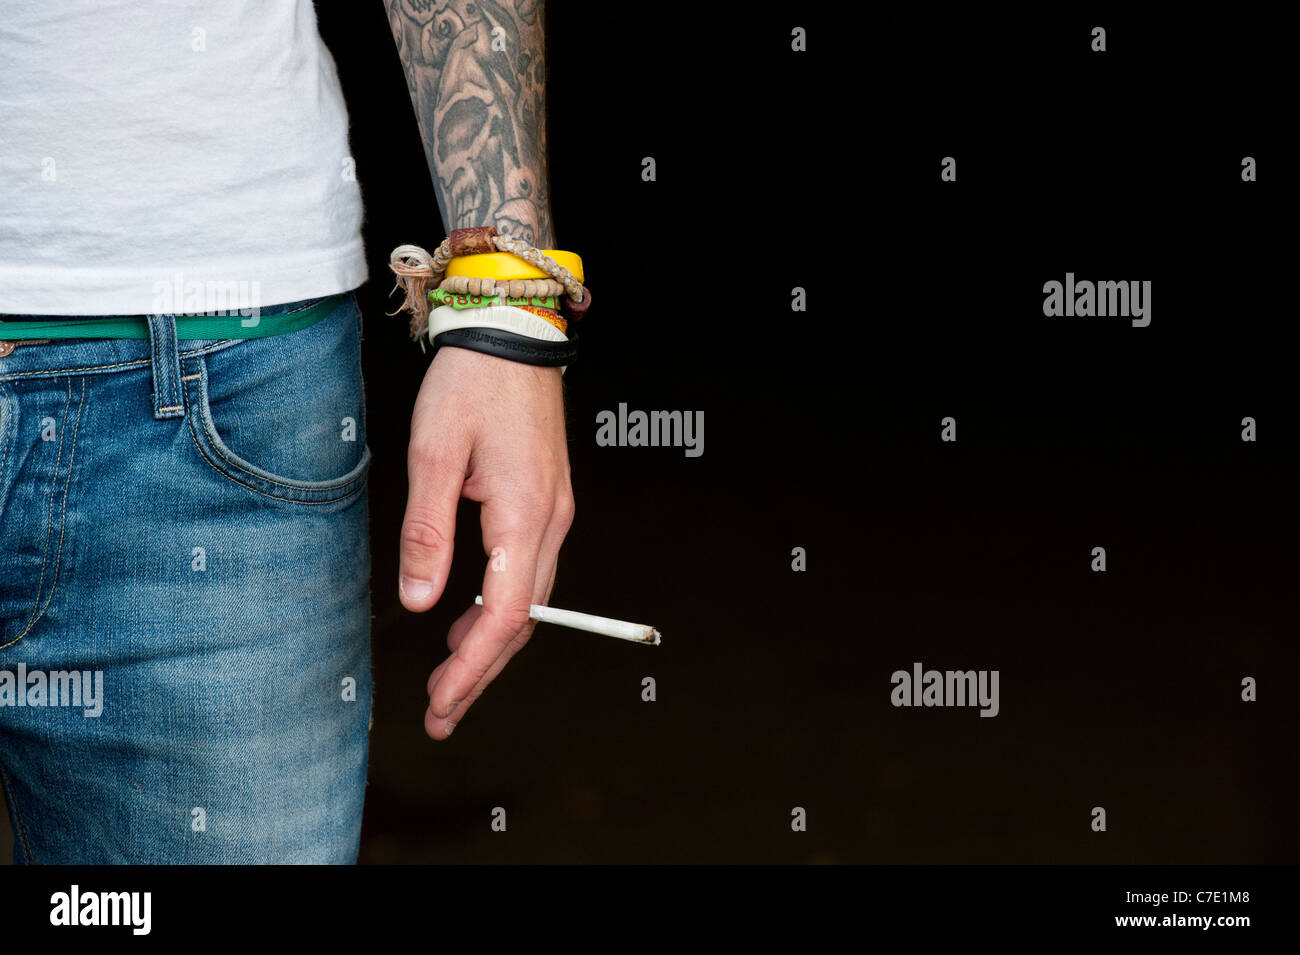 L'adolescent tatoué tenant un joint de cannabis Banque D'Images